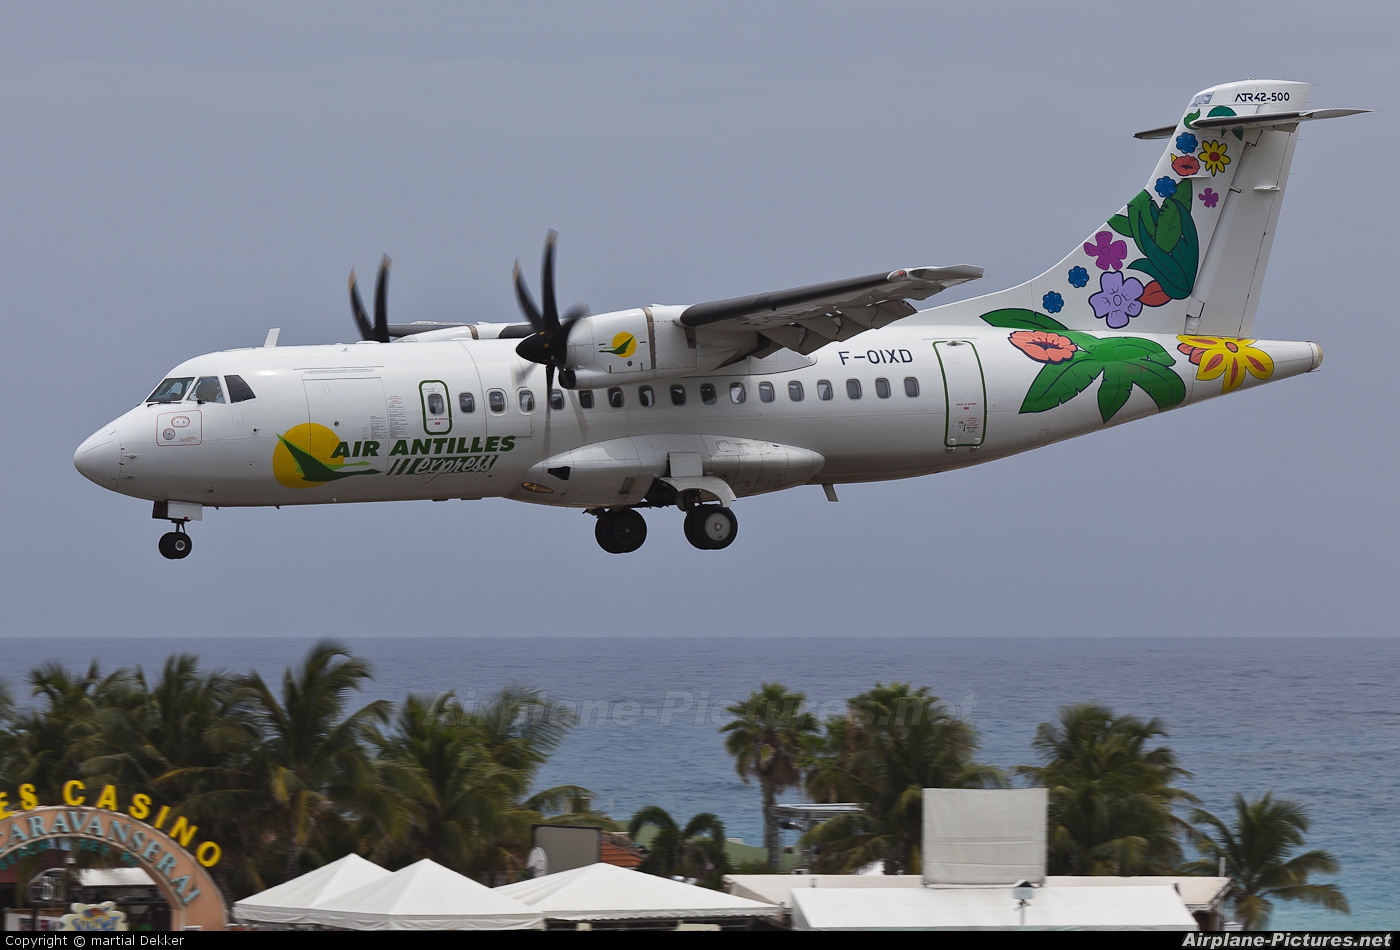 Air Antilles Express F-OIXD aircraft at Sint Maarten - Princess Juliana Intl